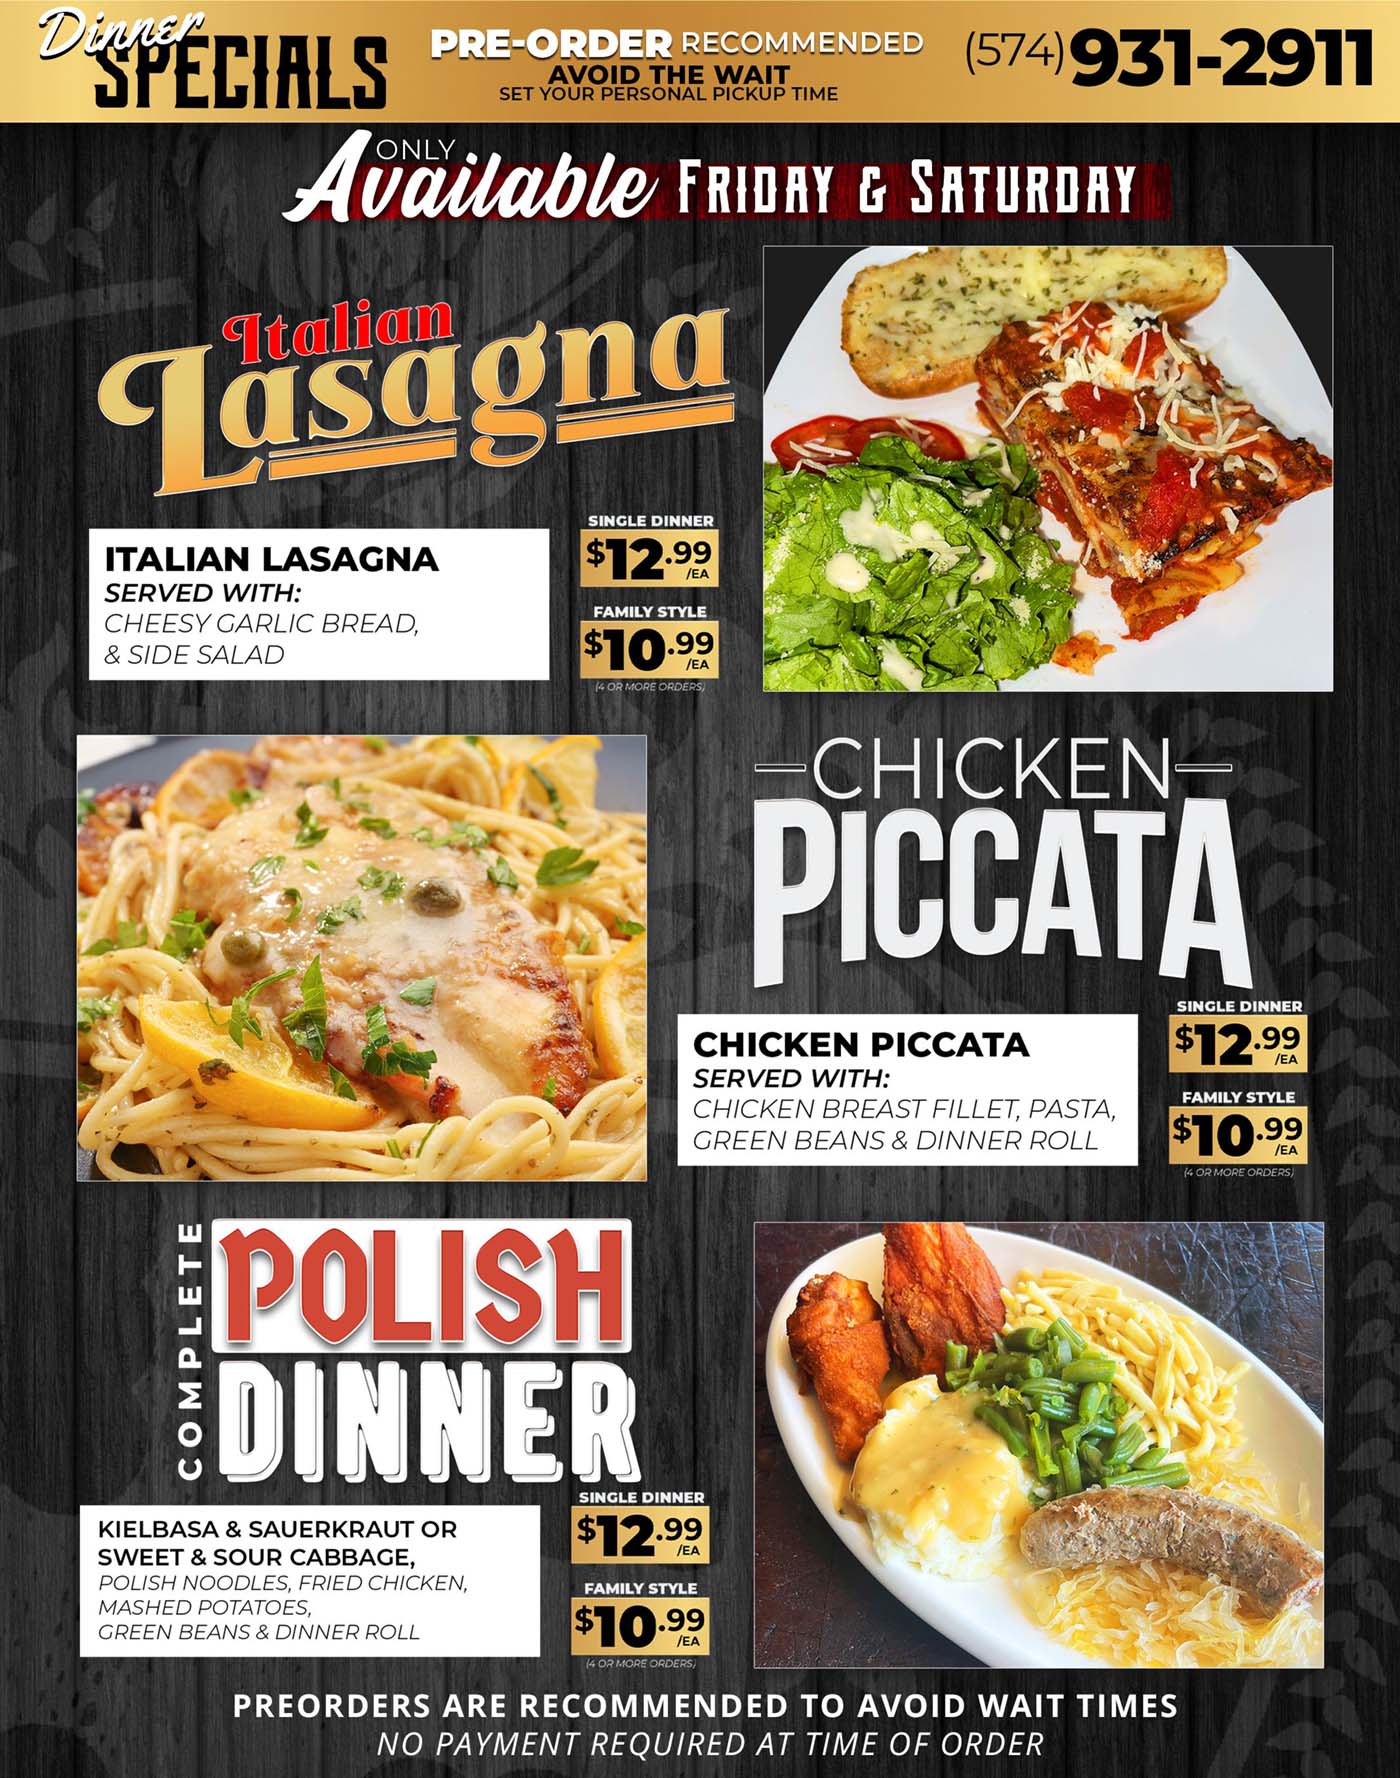 Italian Lasagna, Chicken Piccata & Polish Dinner Specials